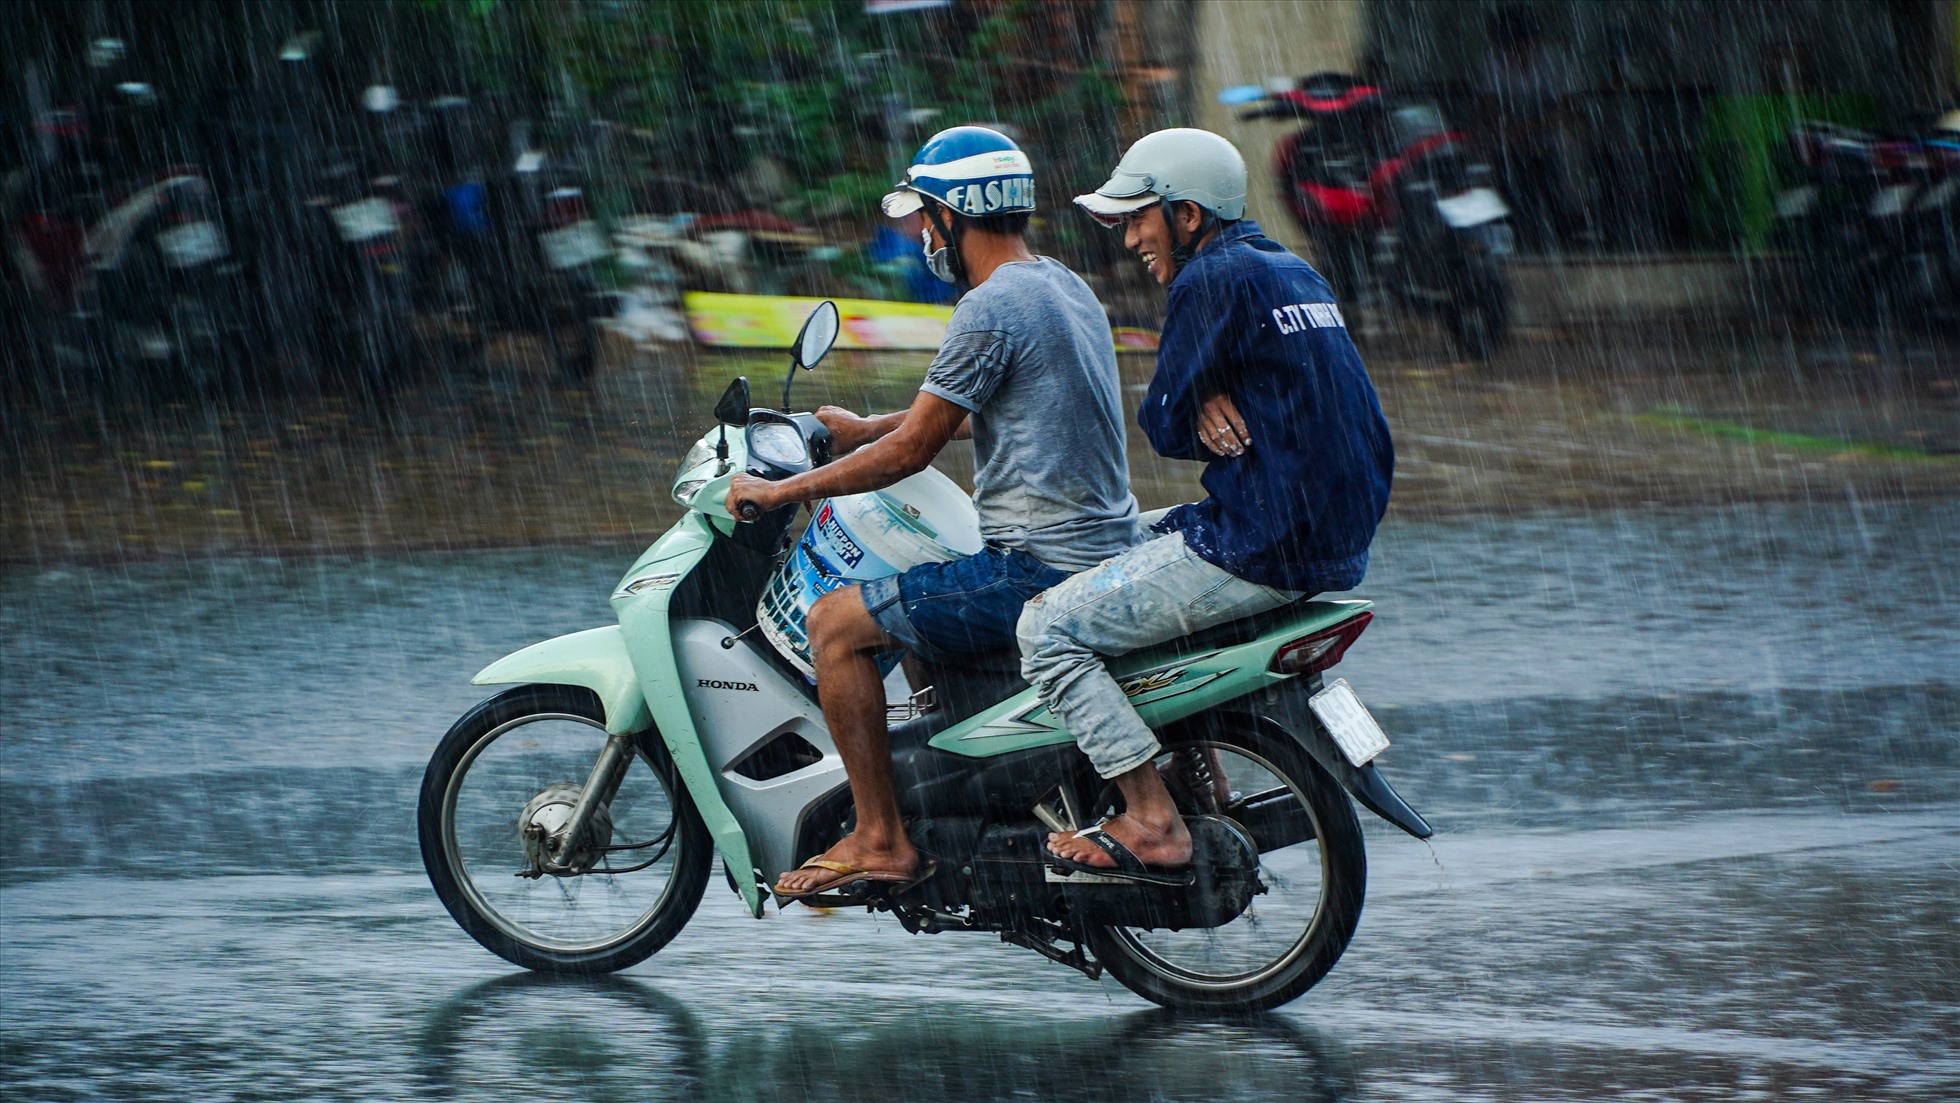 Cơn mưa đã giúp người dân Cần Thơ giải nhiệt sau nhiều ngày nắng nóng khi không khí trở nên mát mẻ hơn.